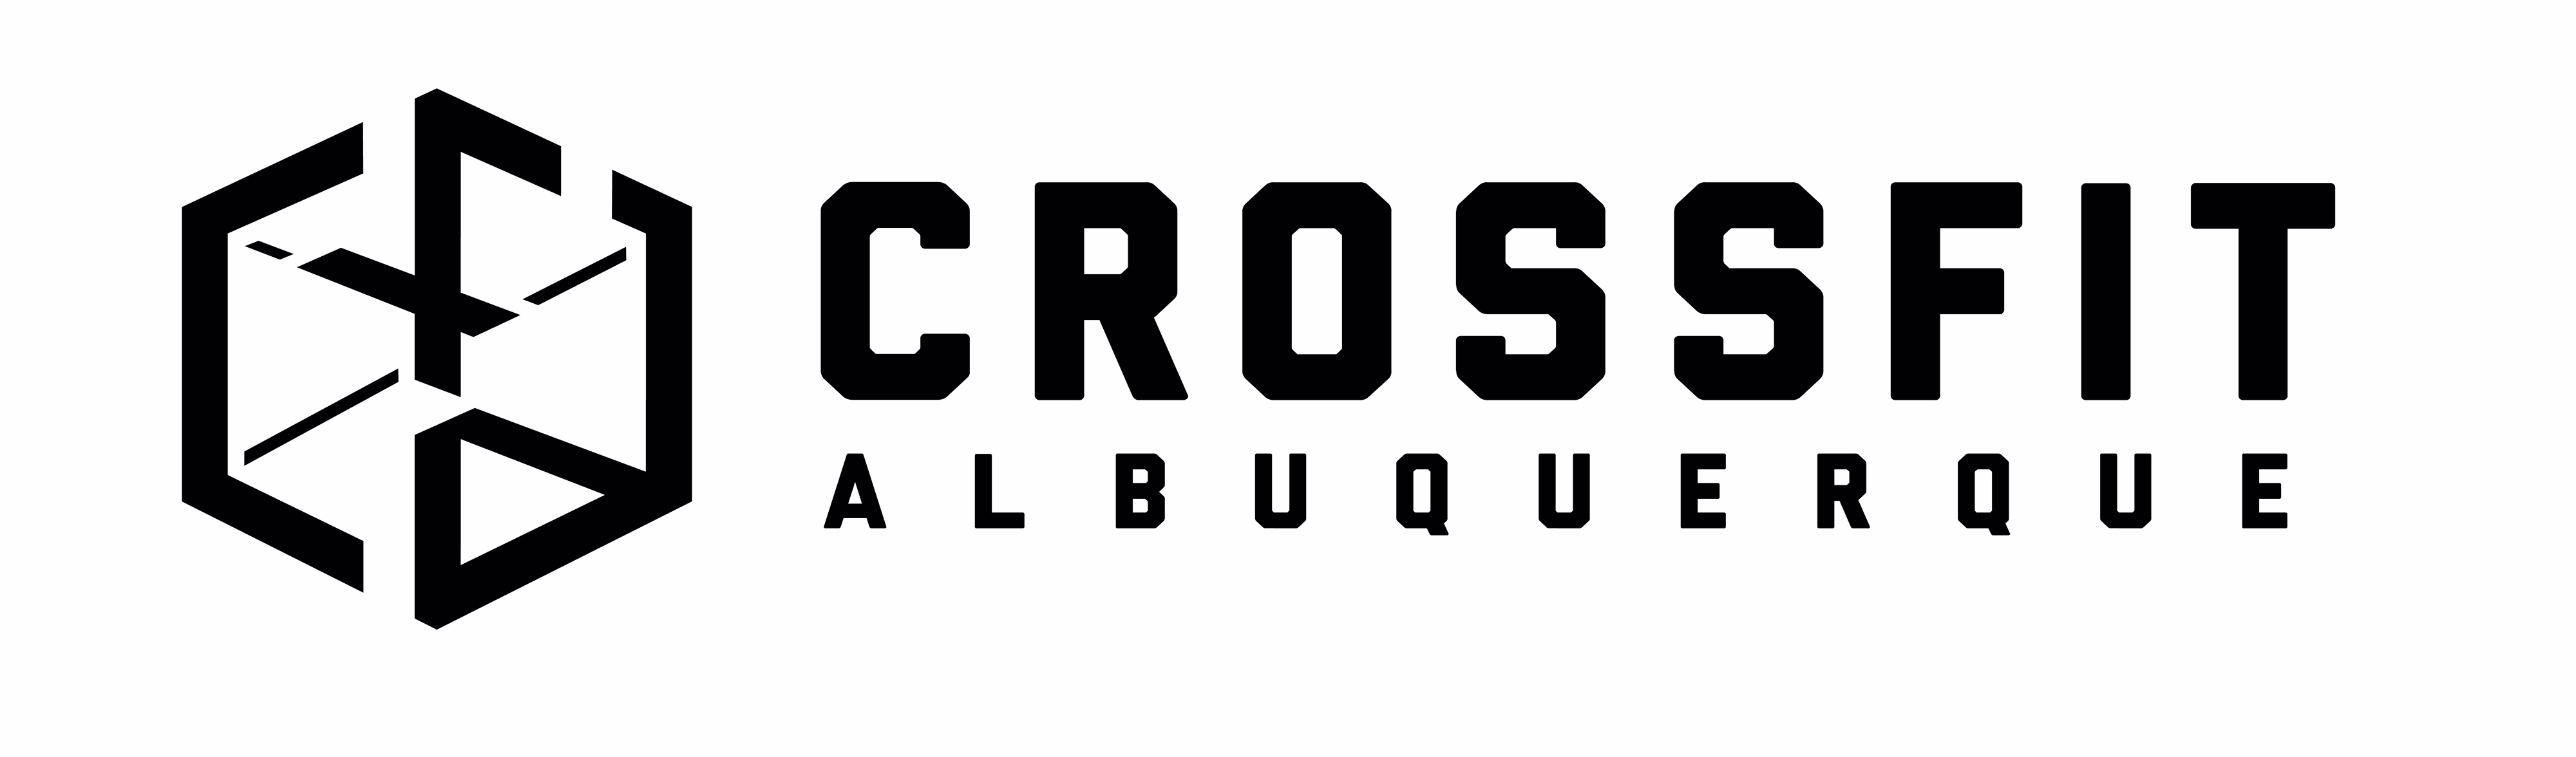 CrossFit Albuquerque logo